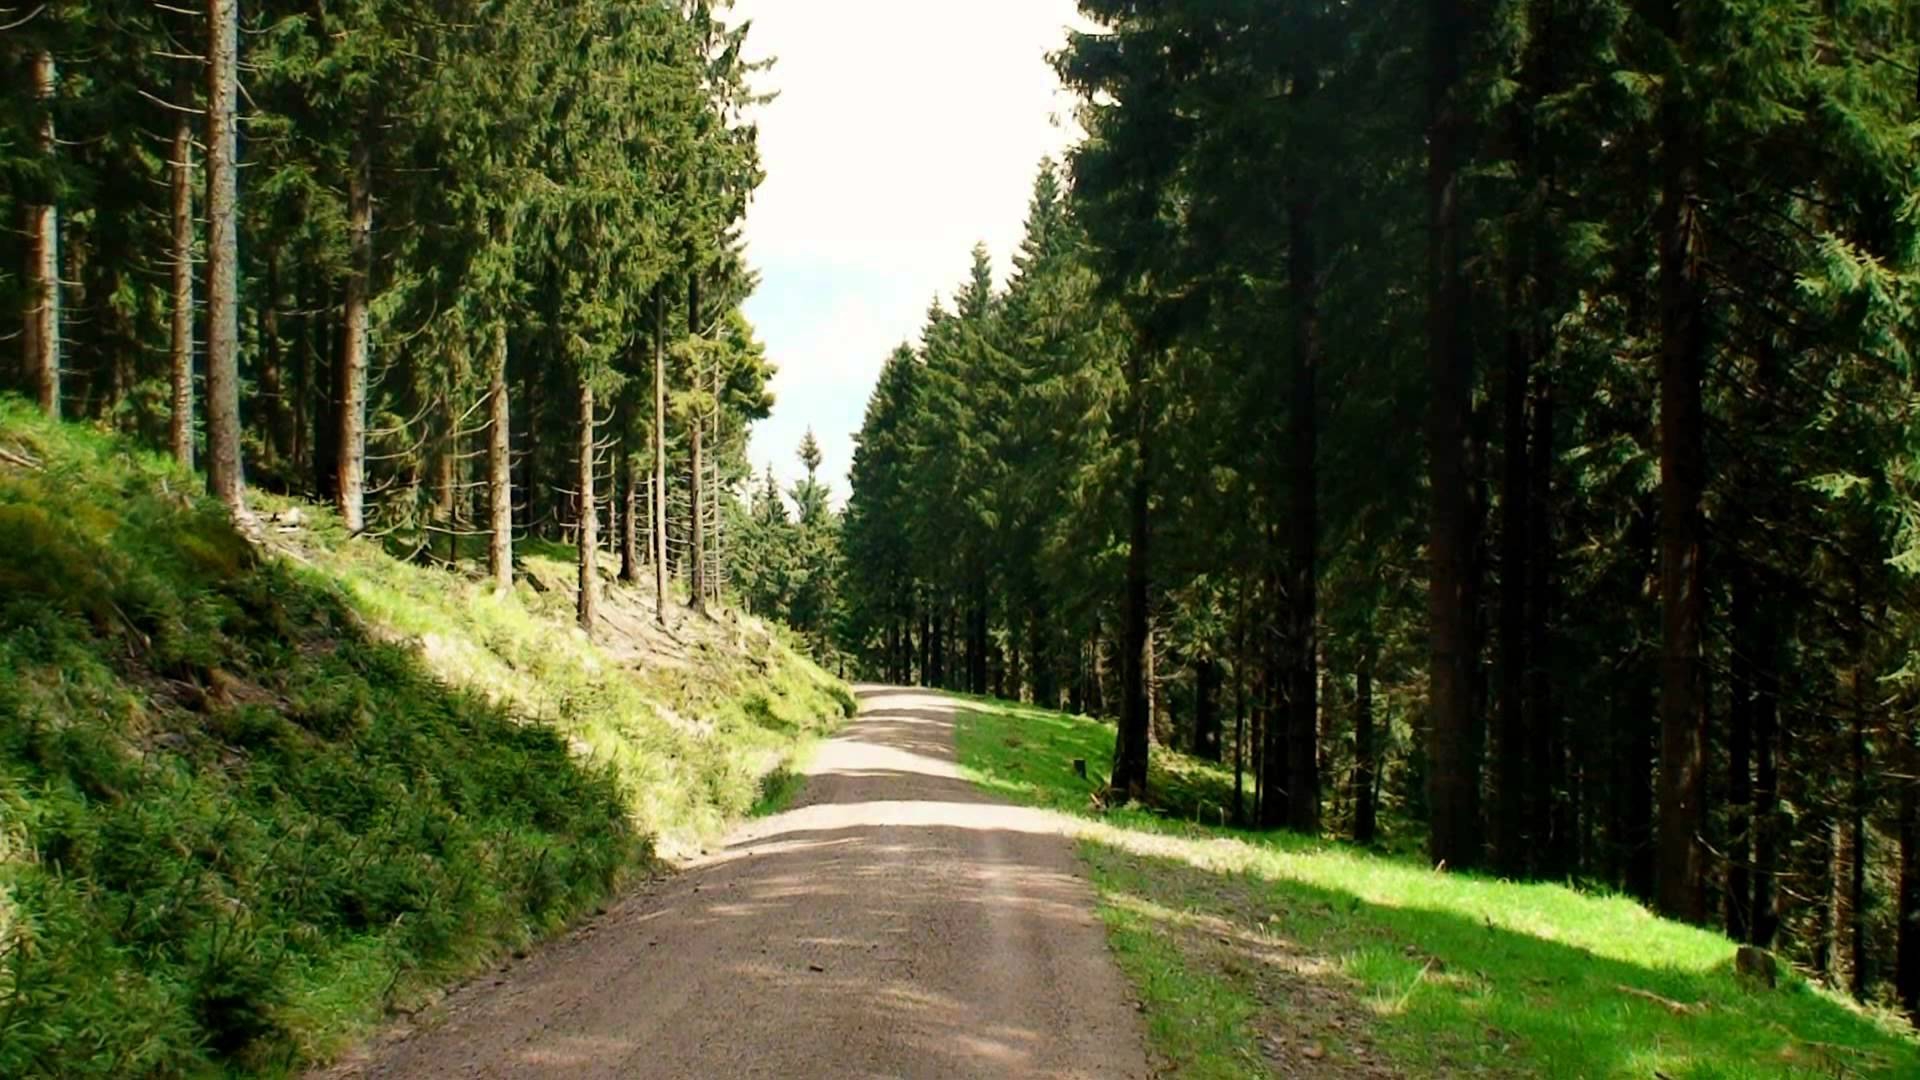 de route naar Oberhof